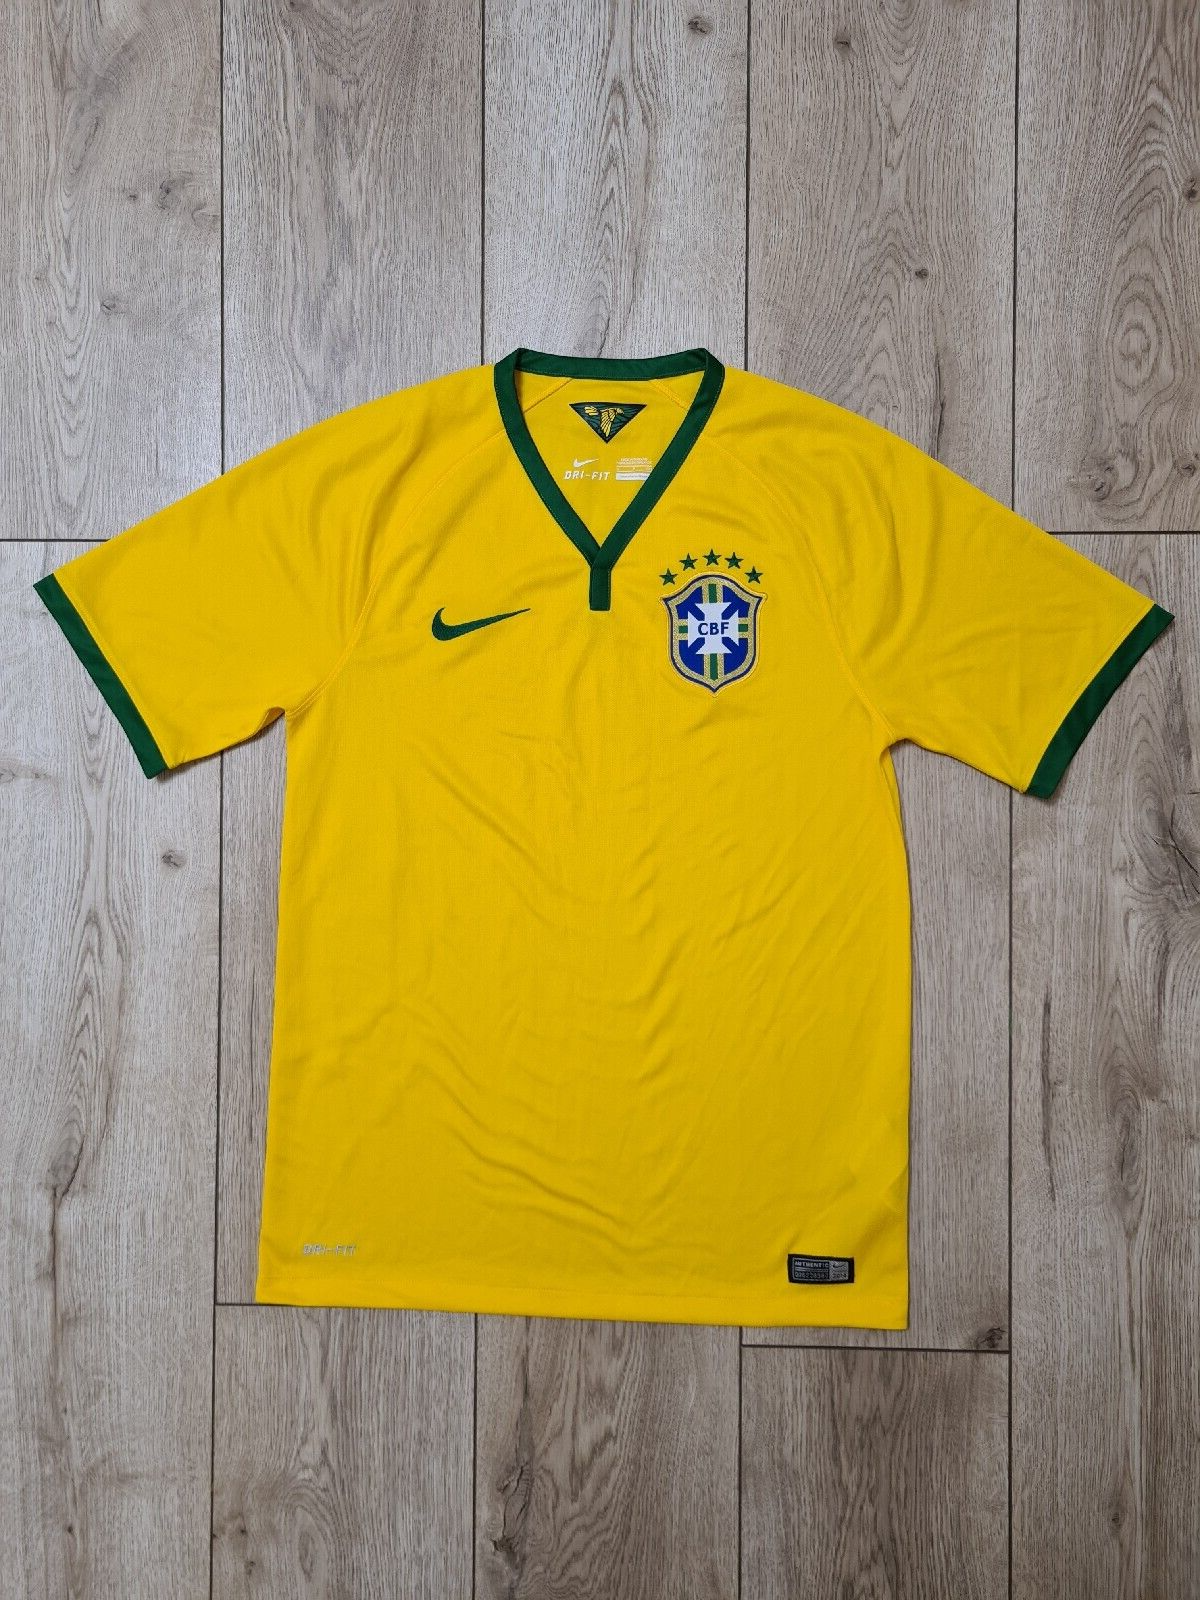 BRAZIL 2014 2016 NATIONAL TEAM HOME FOOTBALL SHIRT SOCCER JERSEY szS NIKE